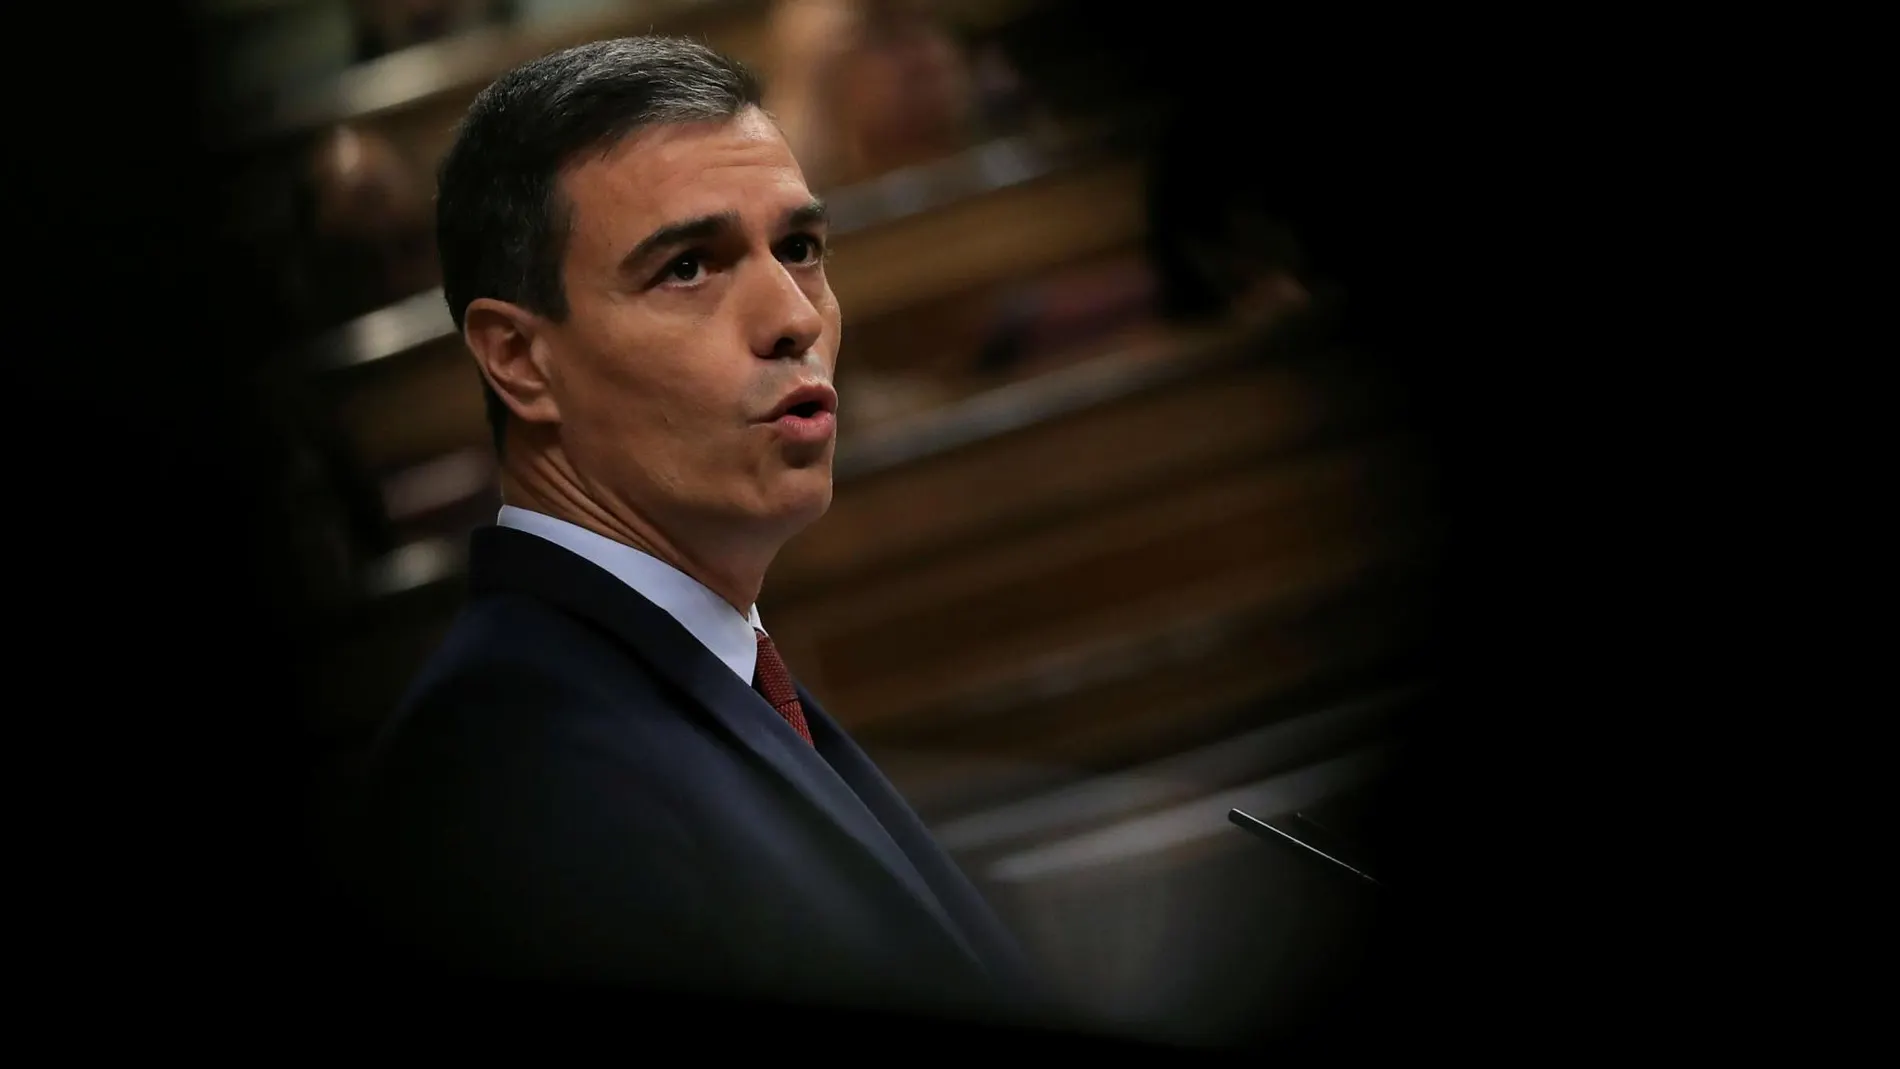 El presidente del Gobierno en funciones, Pedro Sánchez, durante su intervención en el debate de investidura en el Congreso de los Diputados